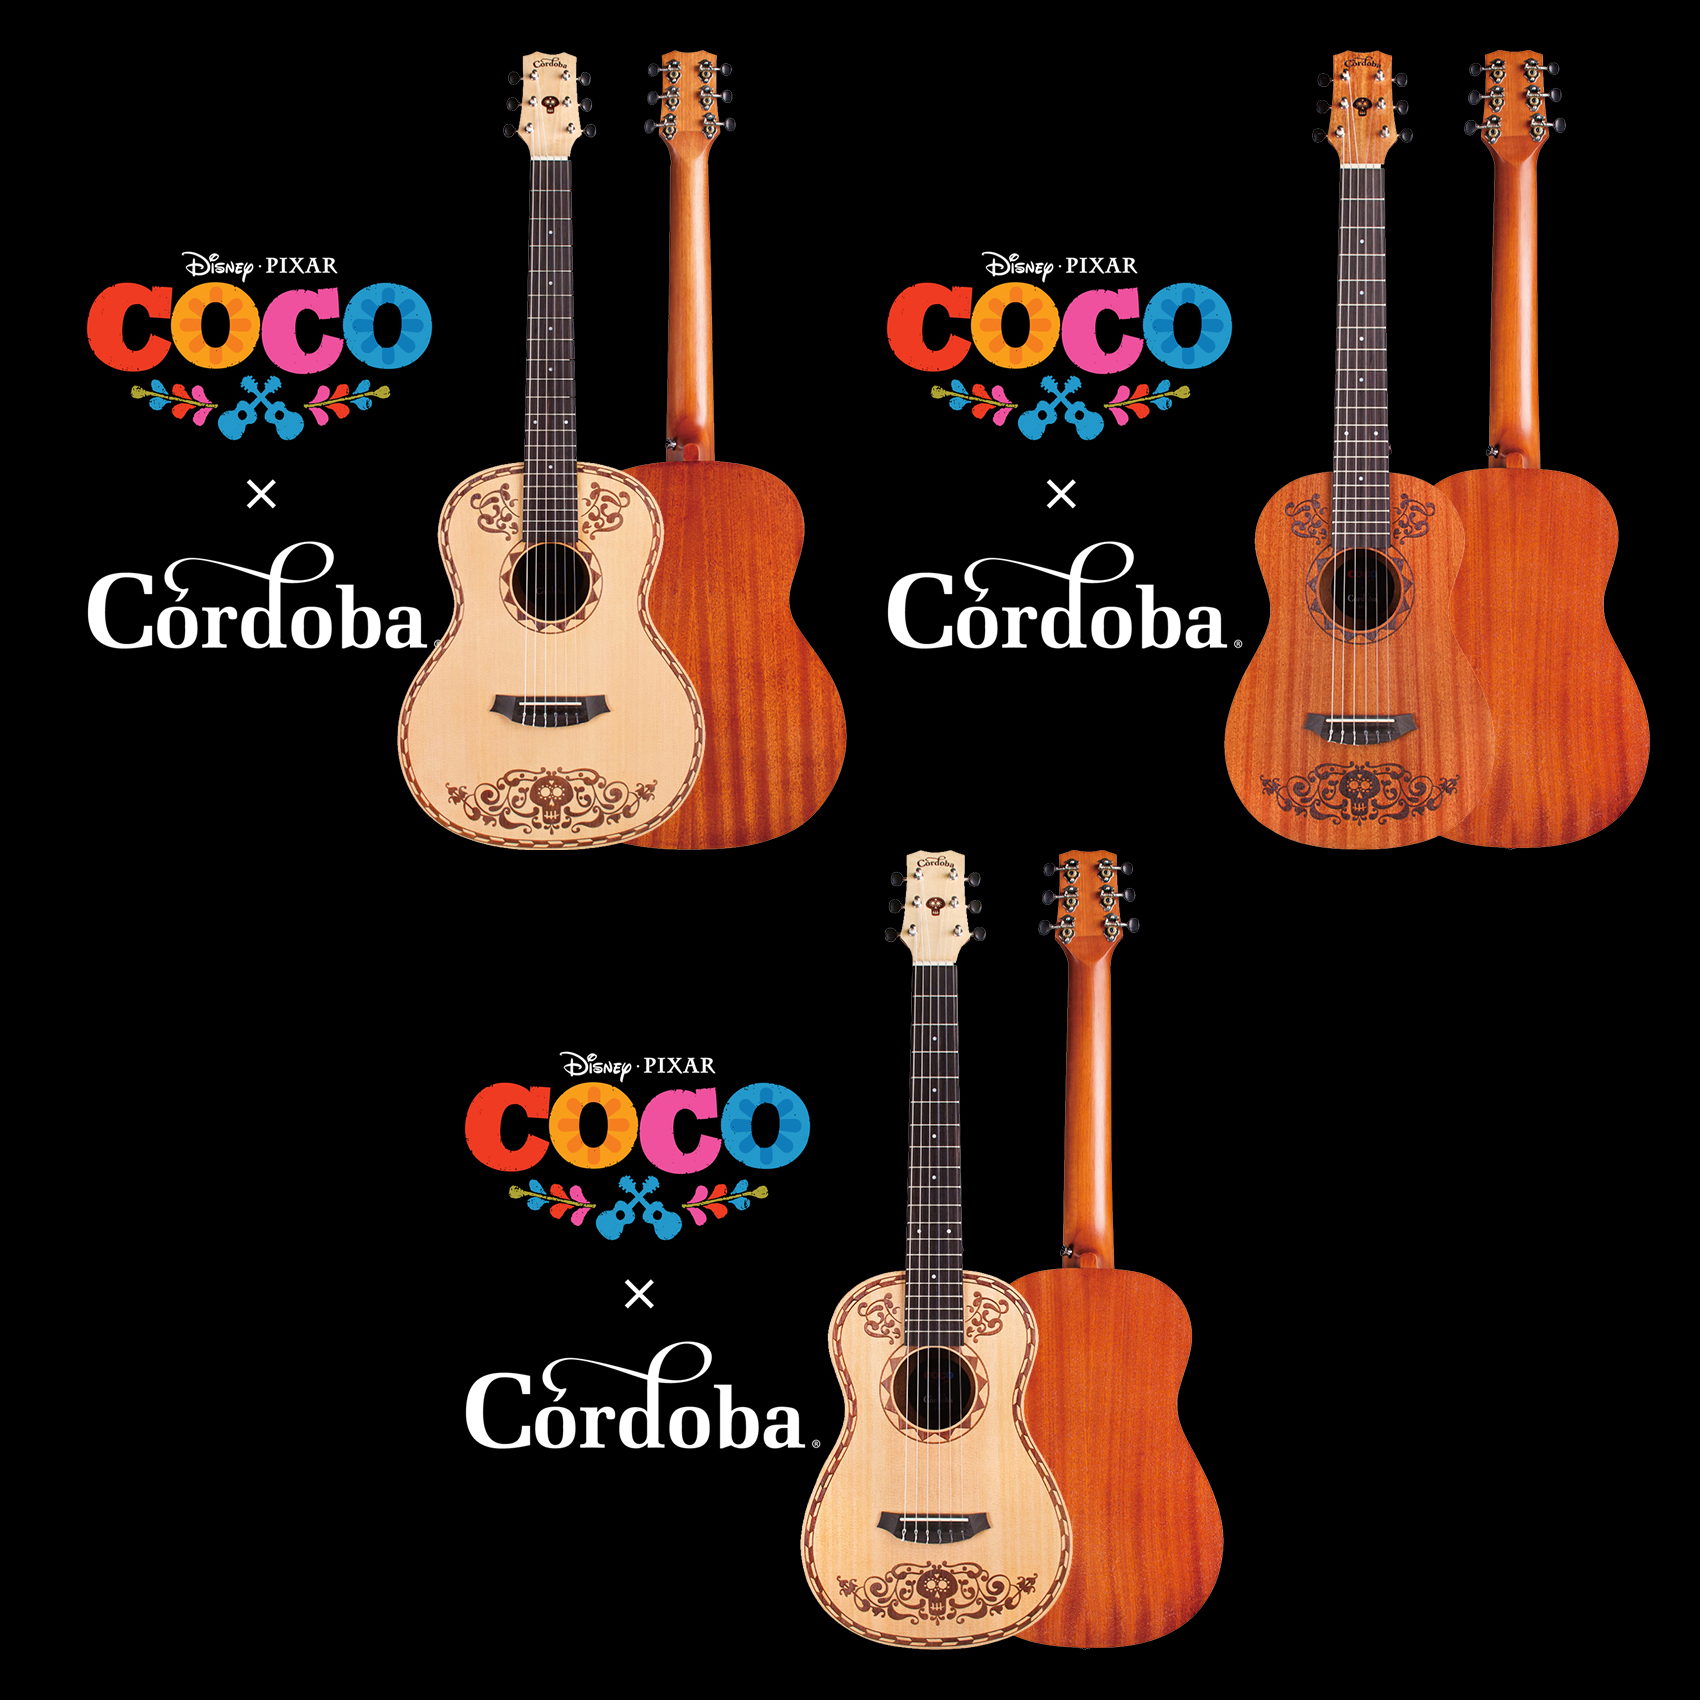 ディズニー ピクサー映画最新作 リメンバー ミー 原題 Coco のイメージで製作された Coco Cordobaナイロン弦ギターが登場 こちらイケベ新製品情報局